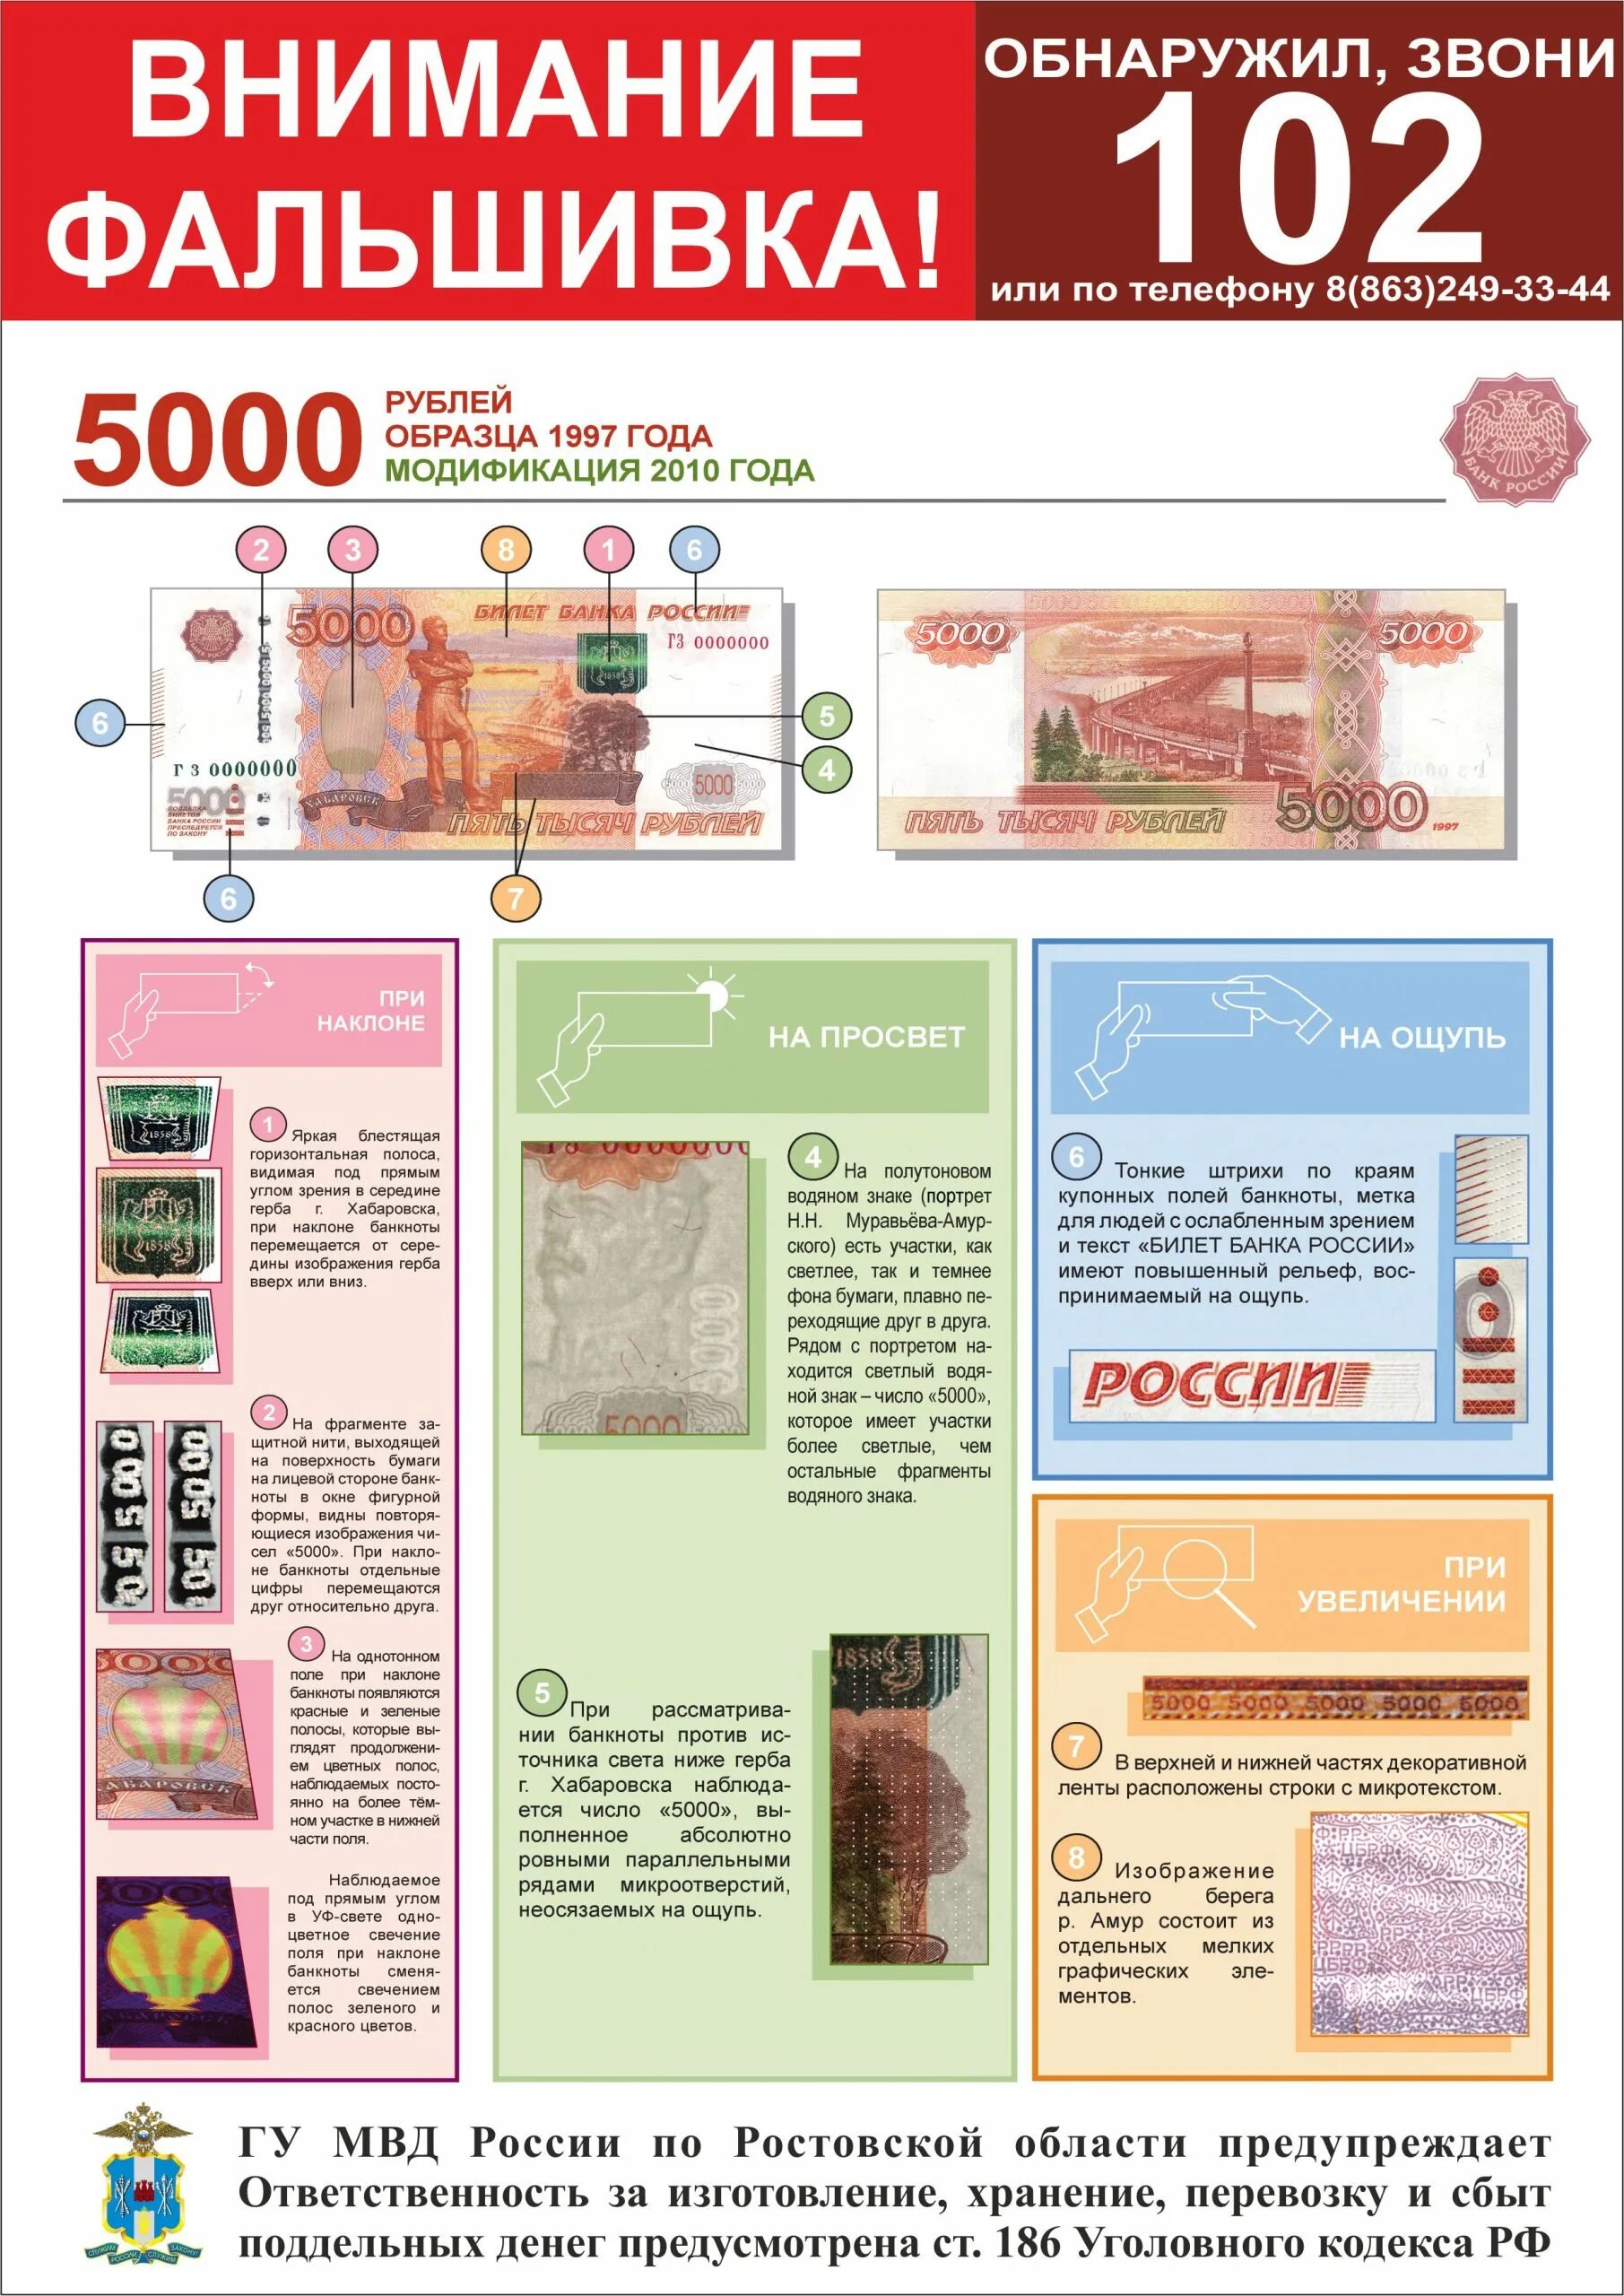 Как проверить 5000 рублей